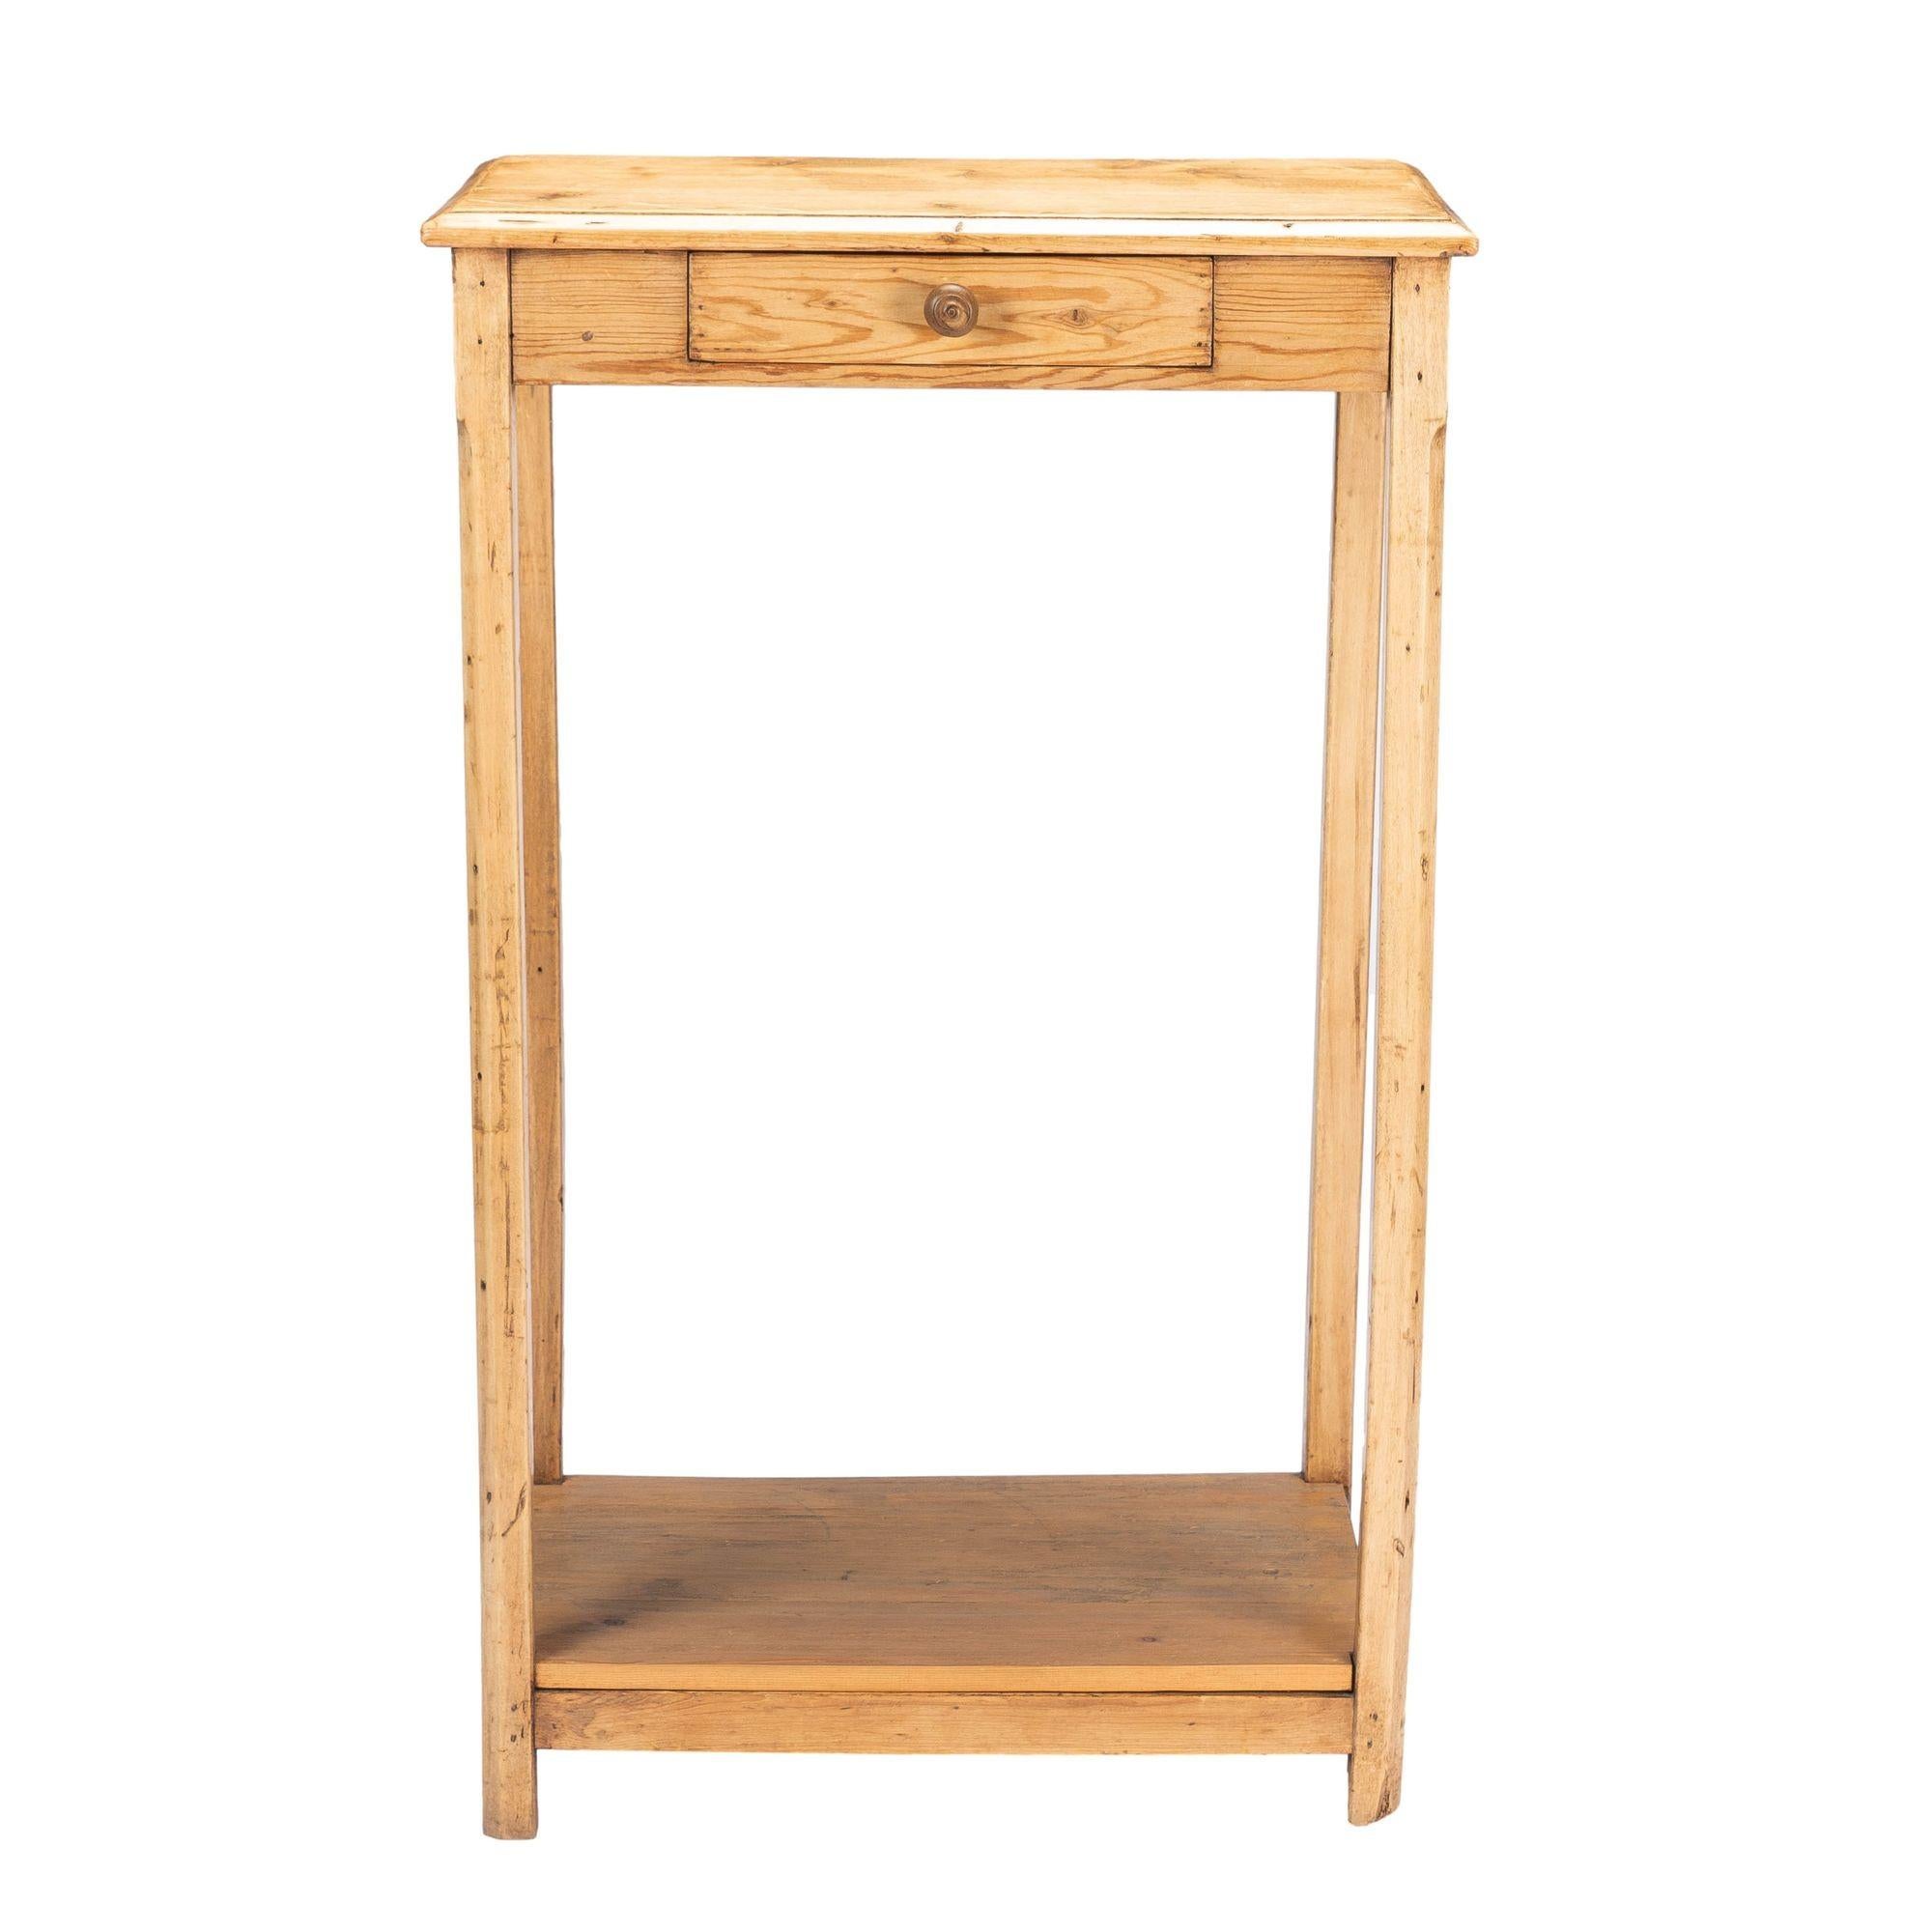 Unvollendeter englischer Tannenschreibtisch oder Schreibtisch. Der Tisch verfügt über eine Schürzenschublade mit gedrechseltem Hartholzknauf und quadratisch abgeschrägte Beine, die durch eine Kastenstreckung verbunden sind. Das Regal, das an der